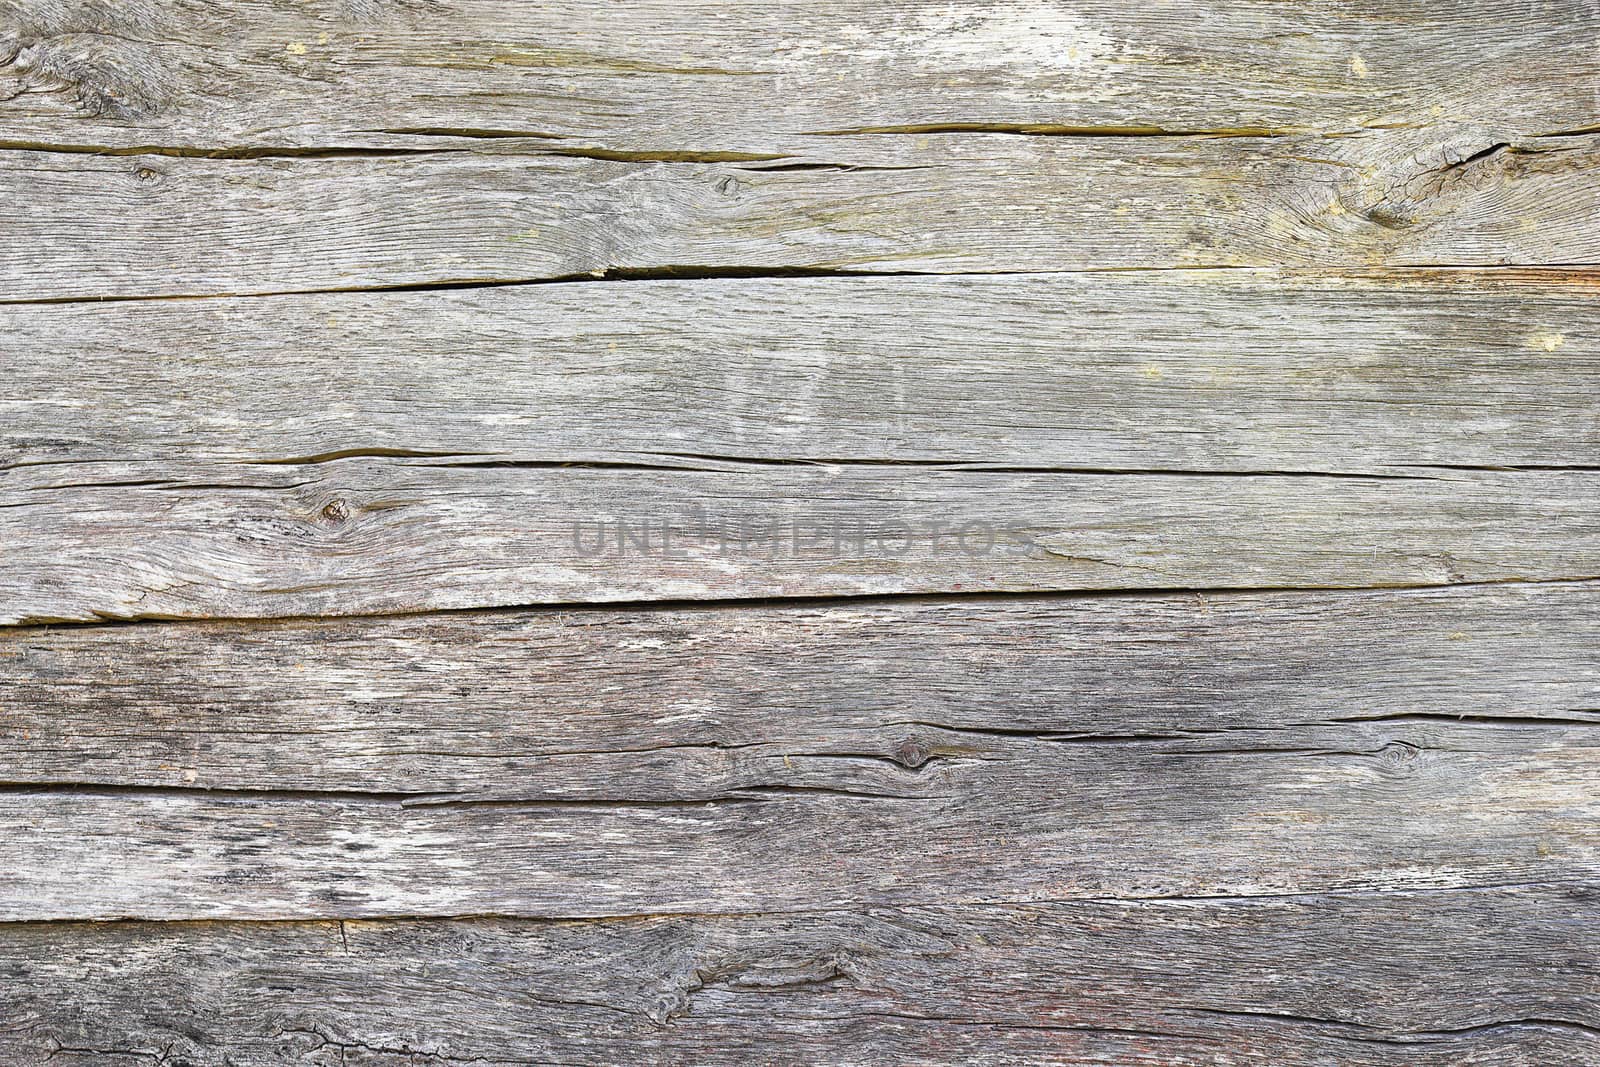 fibers on old oak wood plank by taviphoto